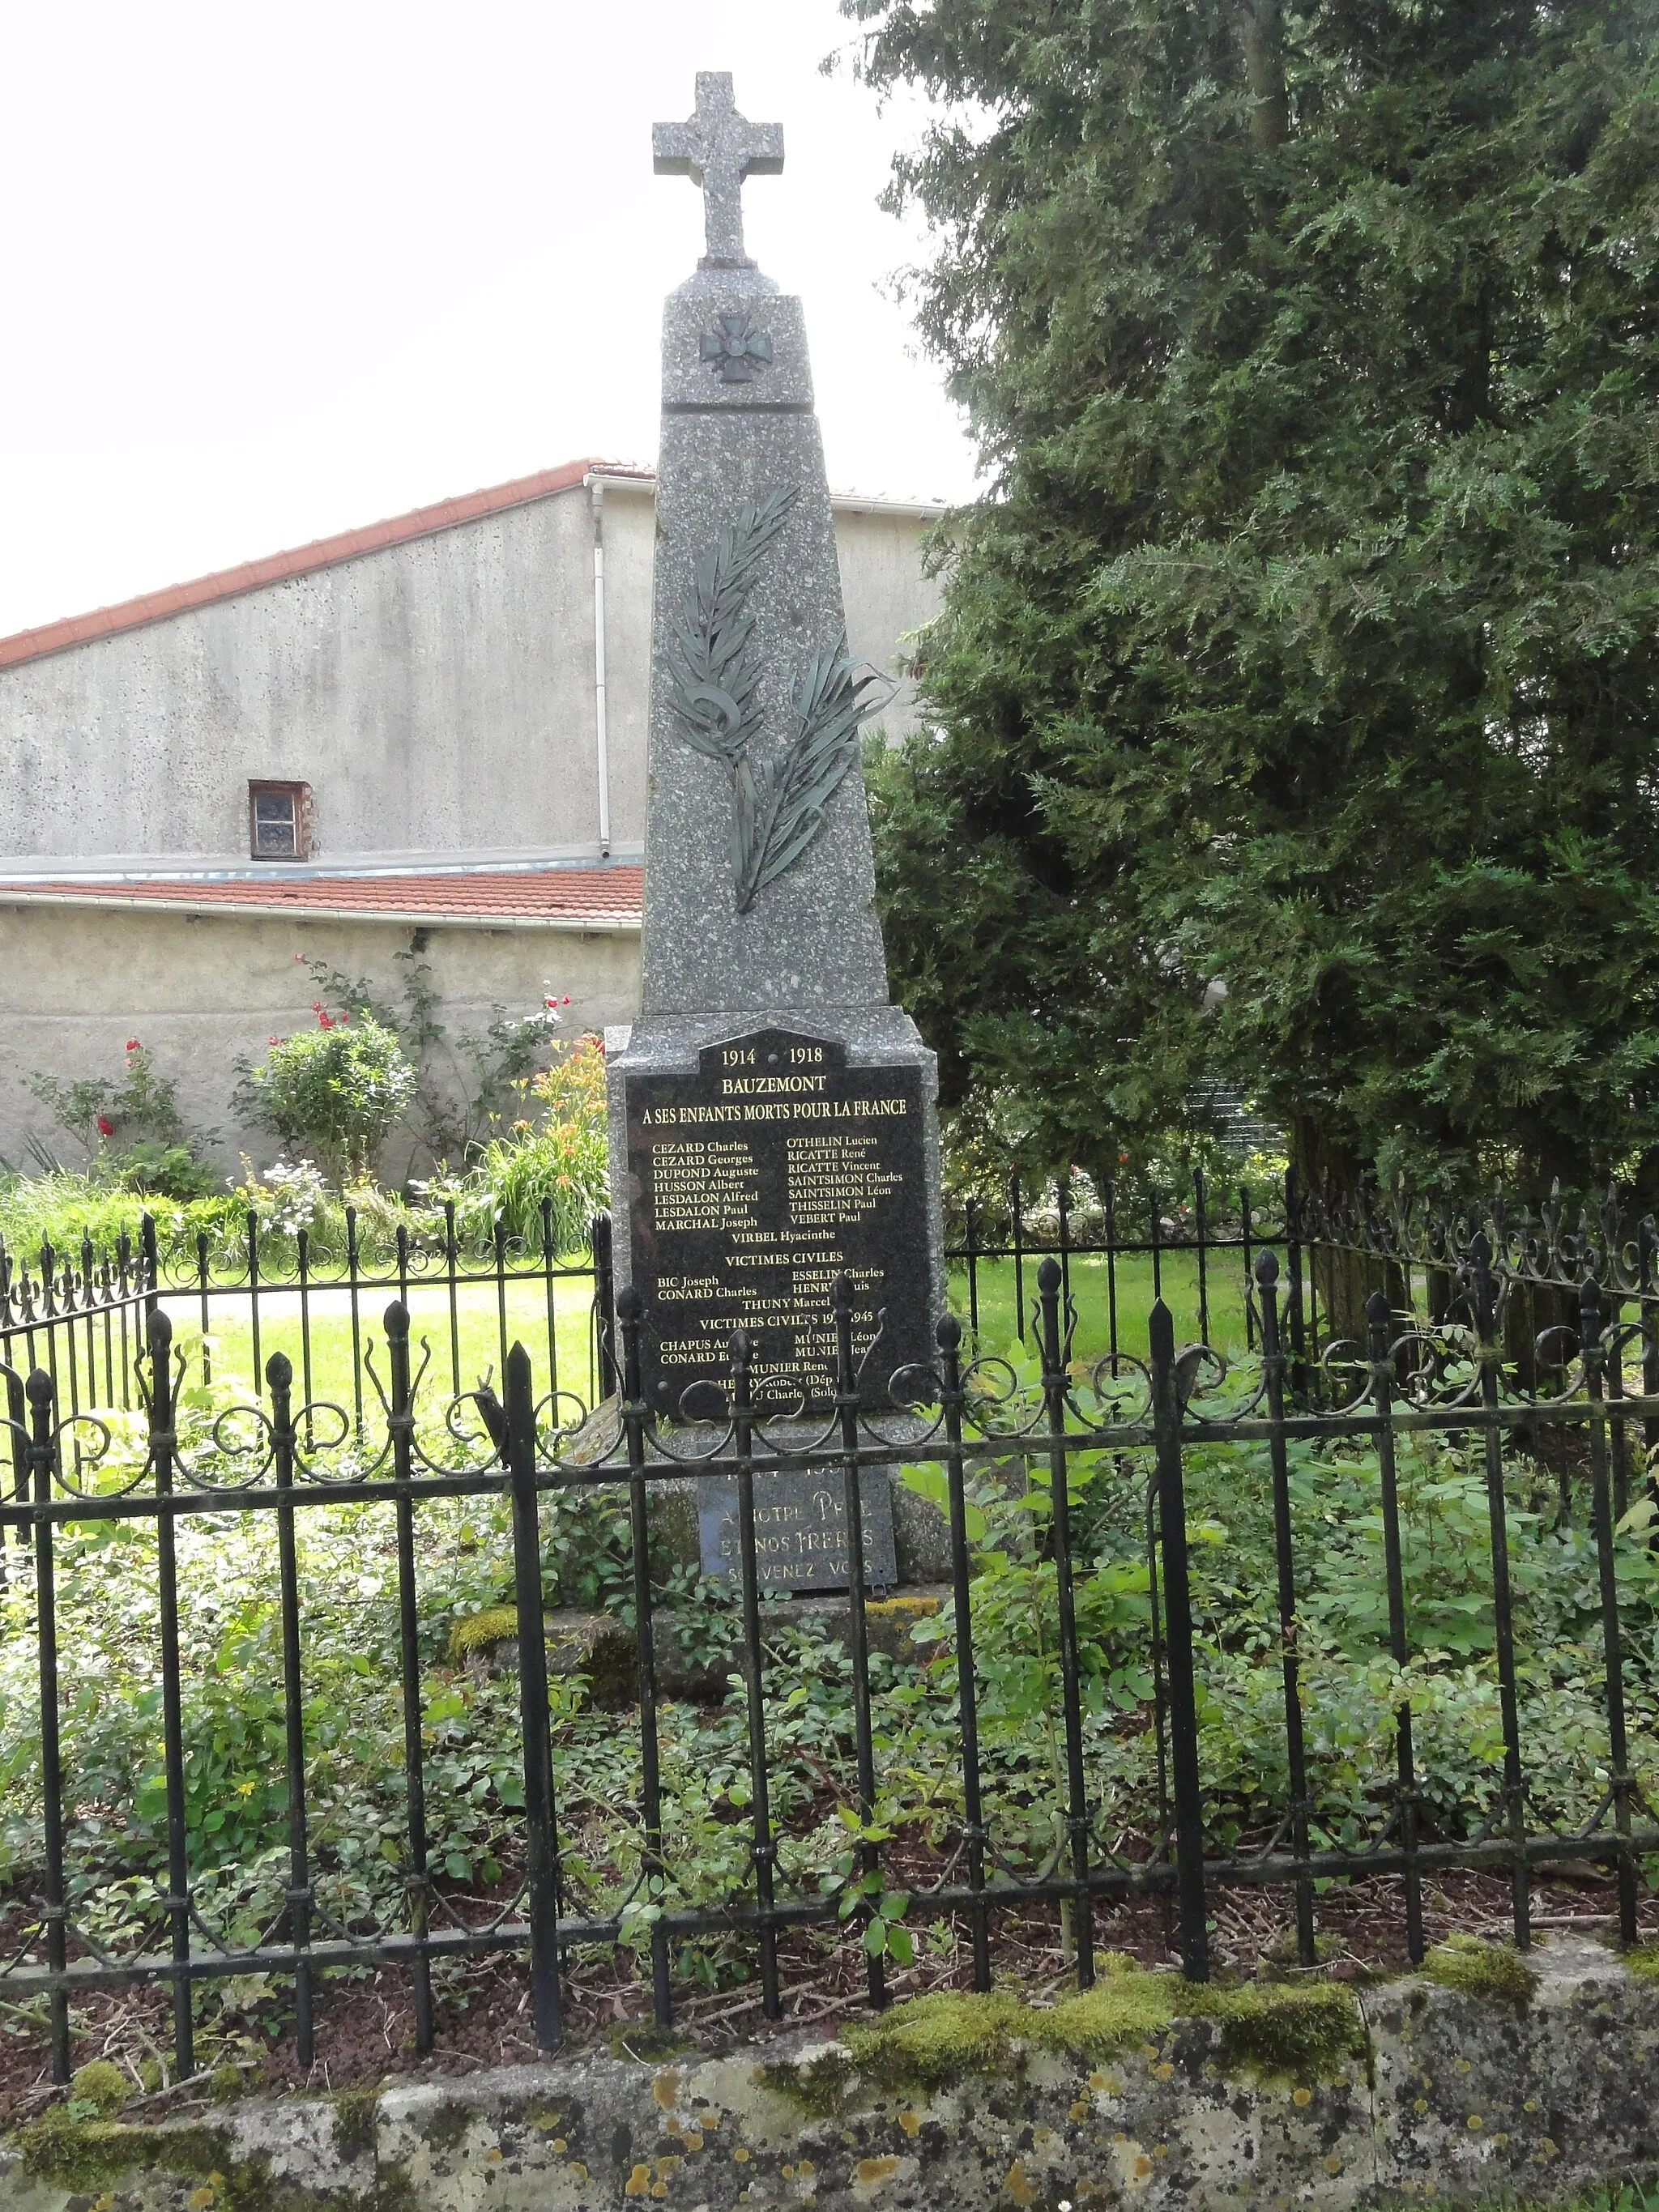 Photo showing: Bauzemont (M-et-M) monument aux morts